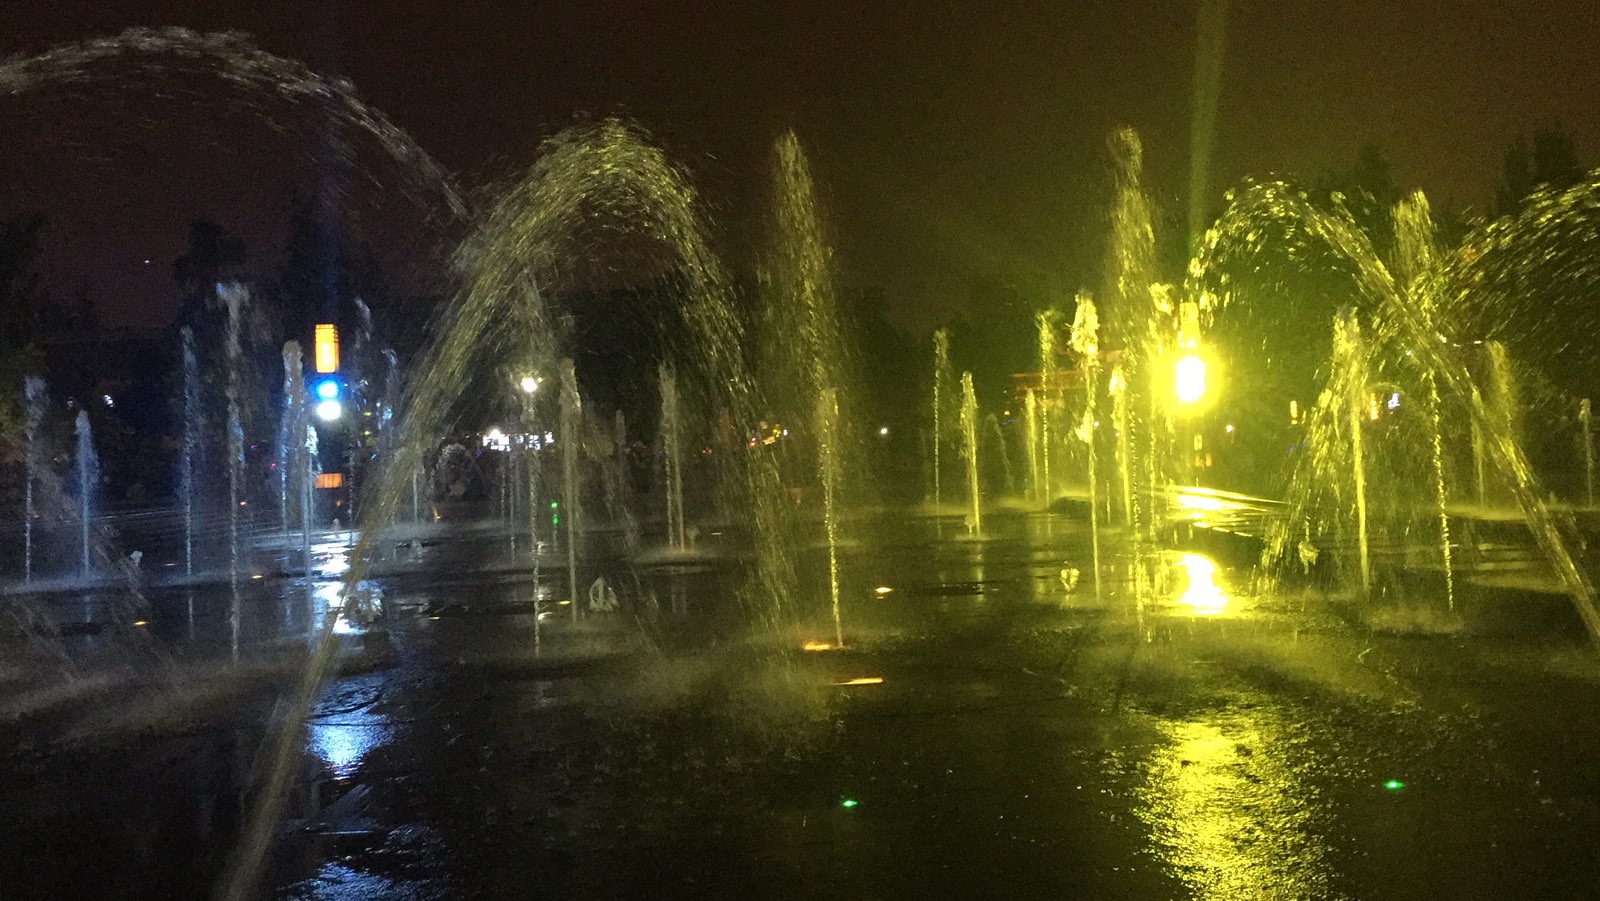 晚上去看的夜景，九点有音乐喷泉表演，还是蛮赞的。